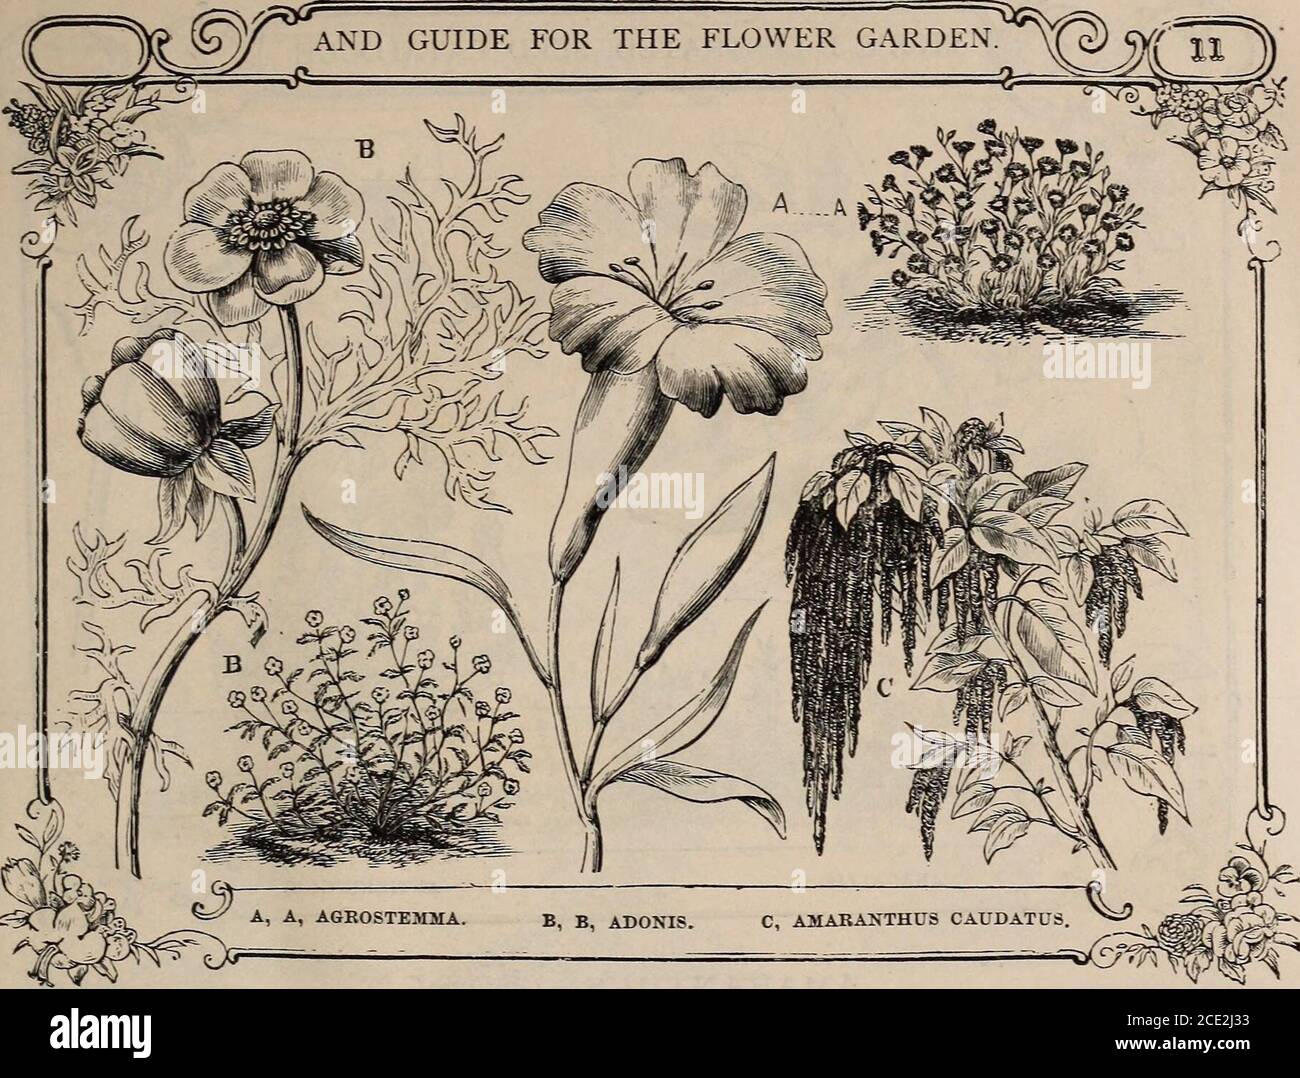 Catálogo ilustrado de Vick y guía floral, 1871 . ADONIS, Nat Ord.  Ranunculace*.una clase de plantas no muy cultivadas. Las flores son muy  brillantes, pero notnumeroso ; florecen durante mucho tiempo ;